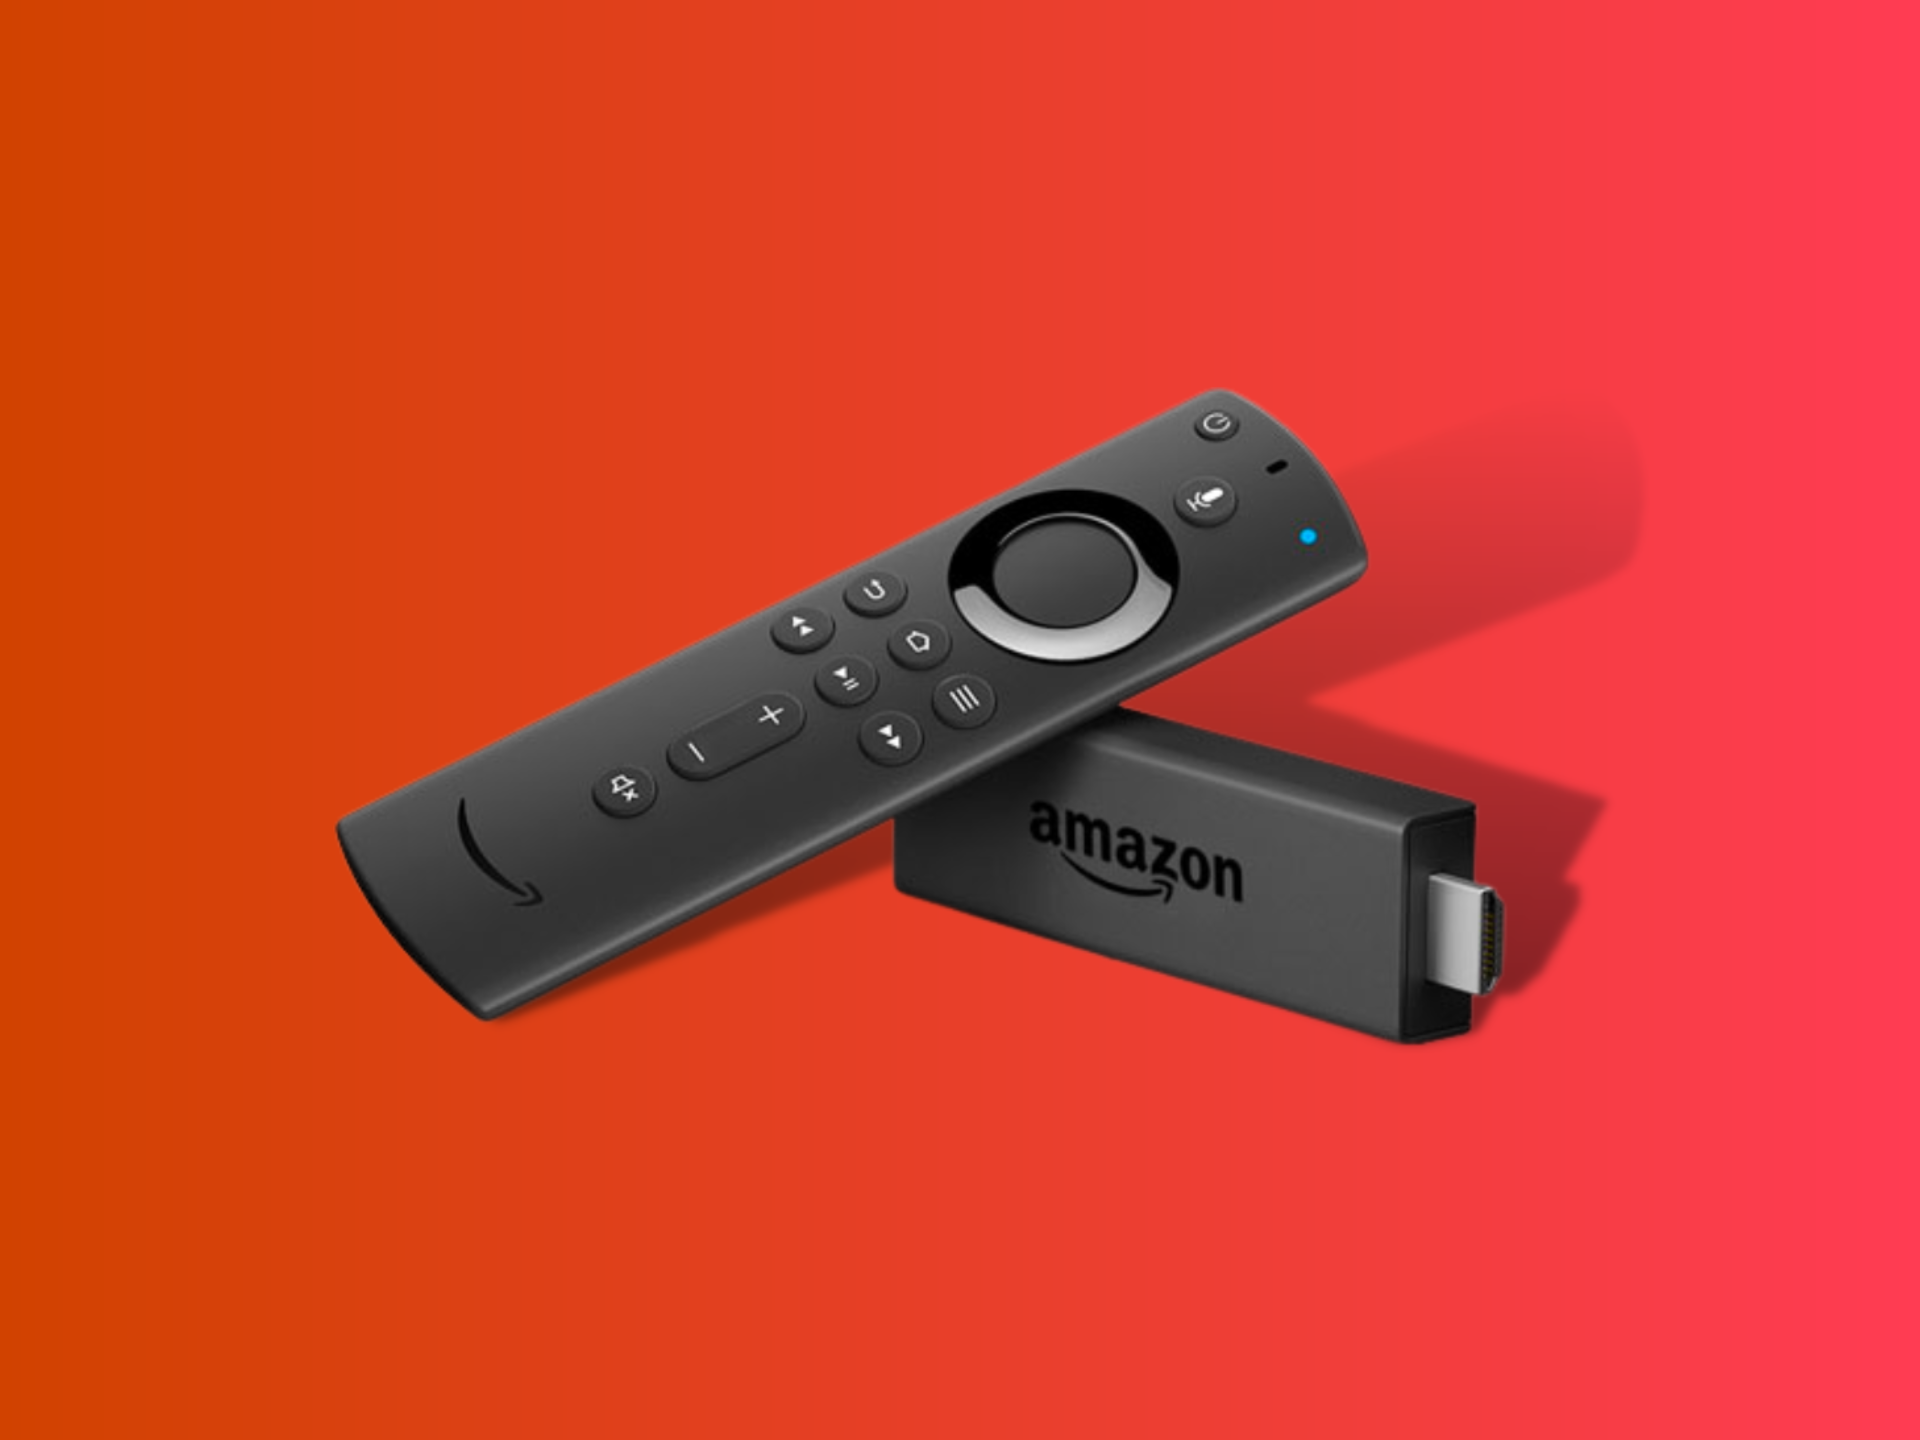 Holen Sie sich den Amazon Fire TV Stick 4K für nur 24,99 $ und genießen Sie Filme von der Couch aus